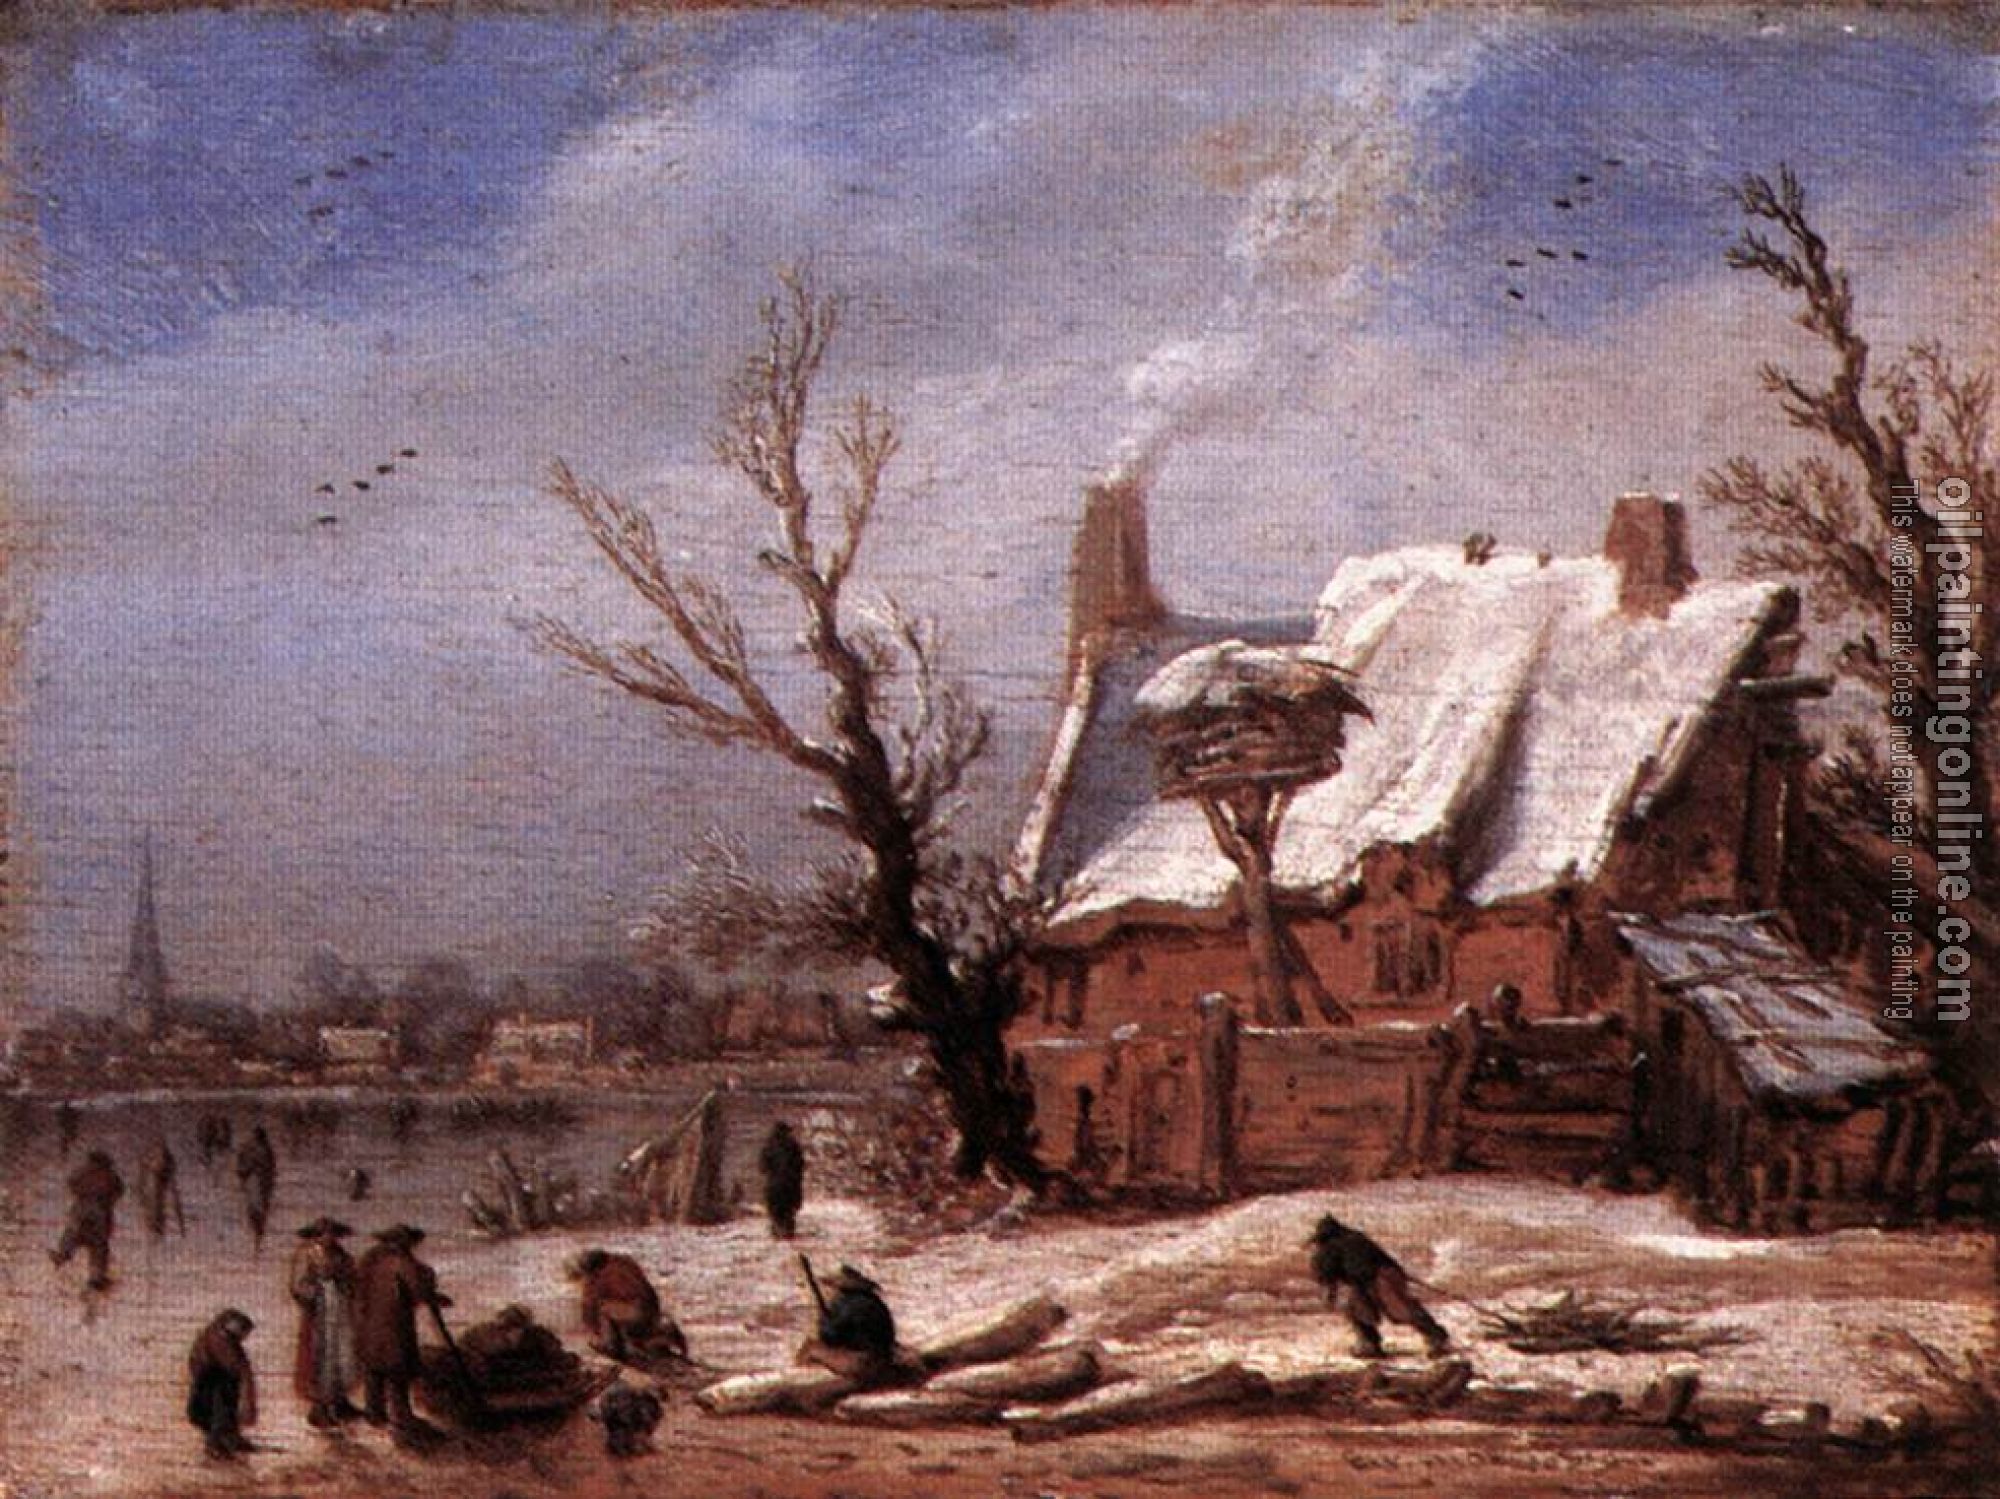 Velde, Esaias van de - Winter Landscape